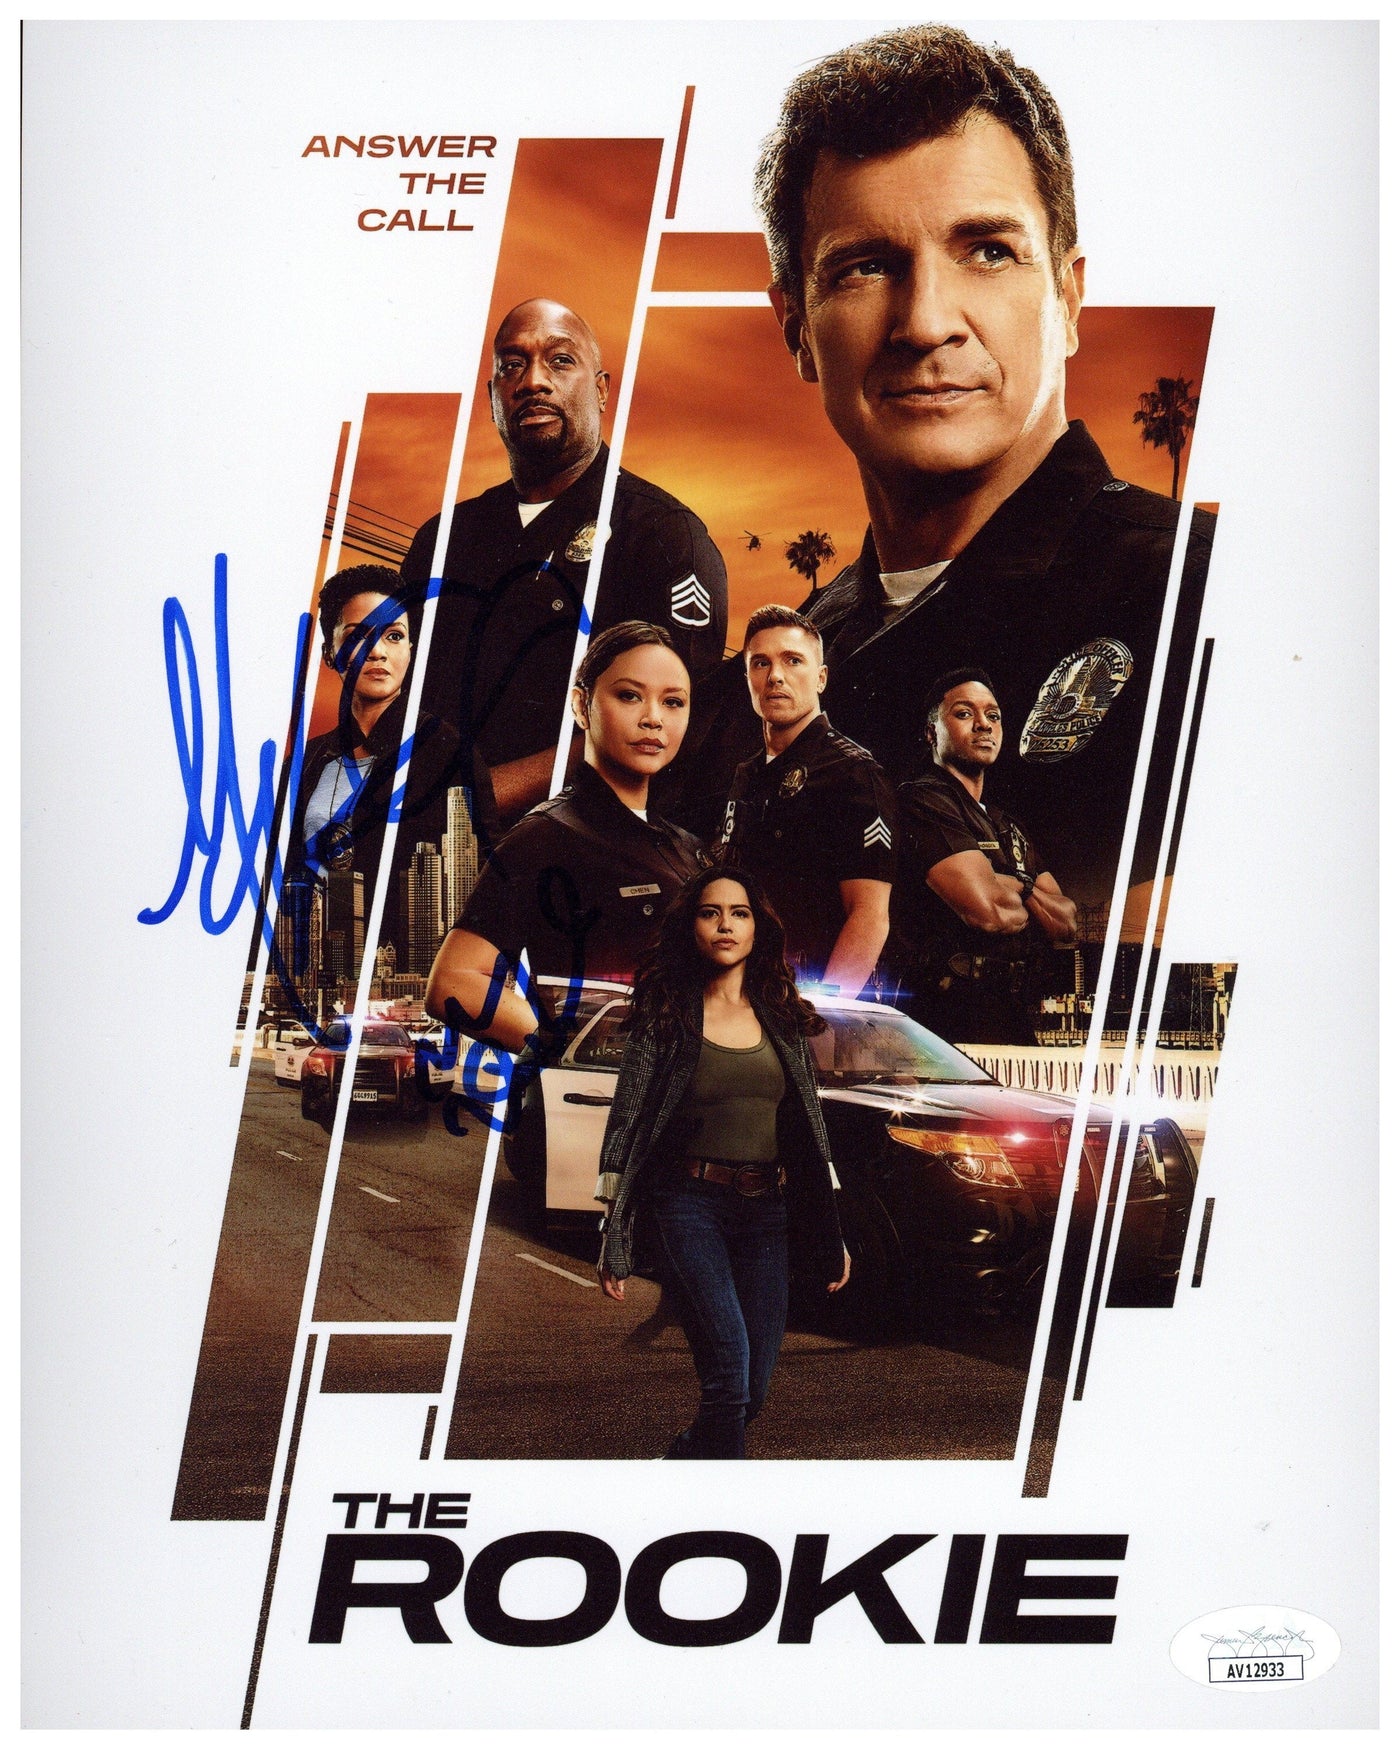 The Rookie Cast Signed 8x10 Photo Mekia Cox & Melissa O'Neil Autographed JSA COA